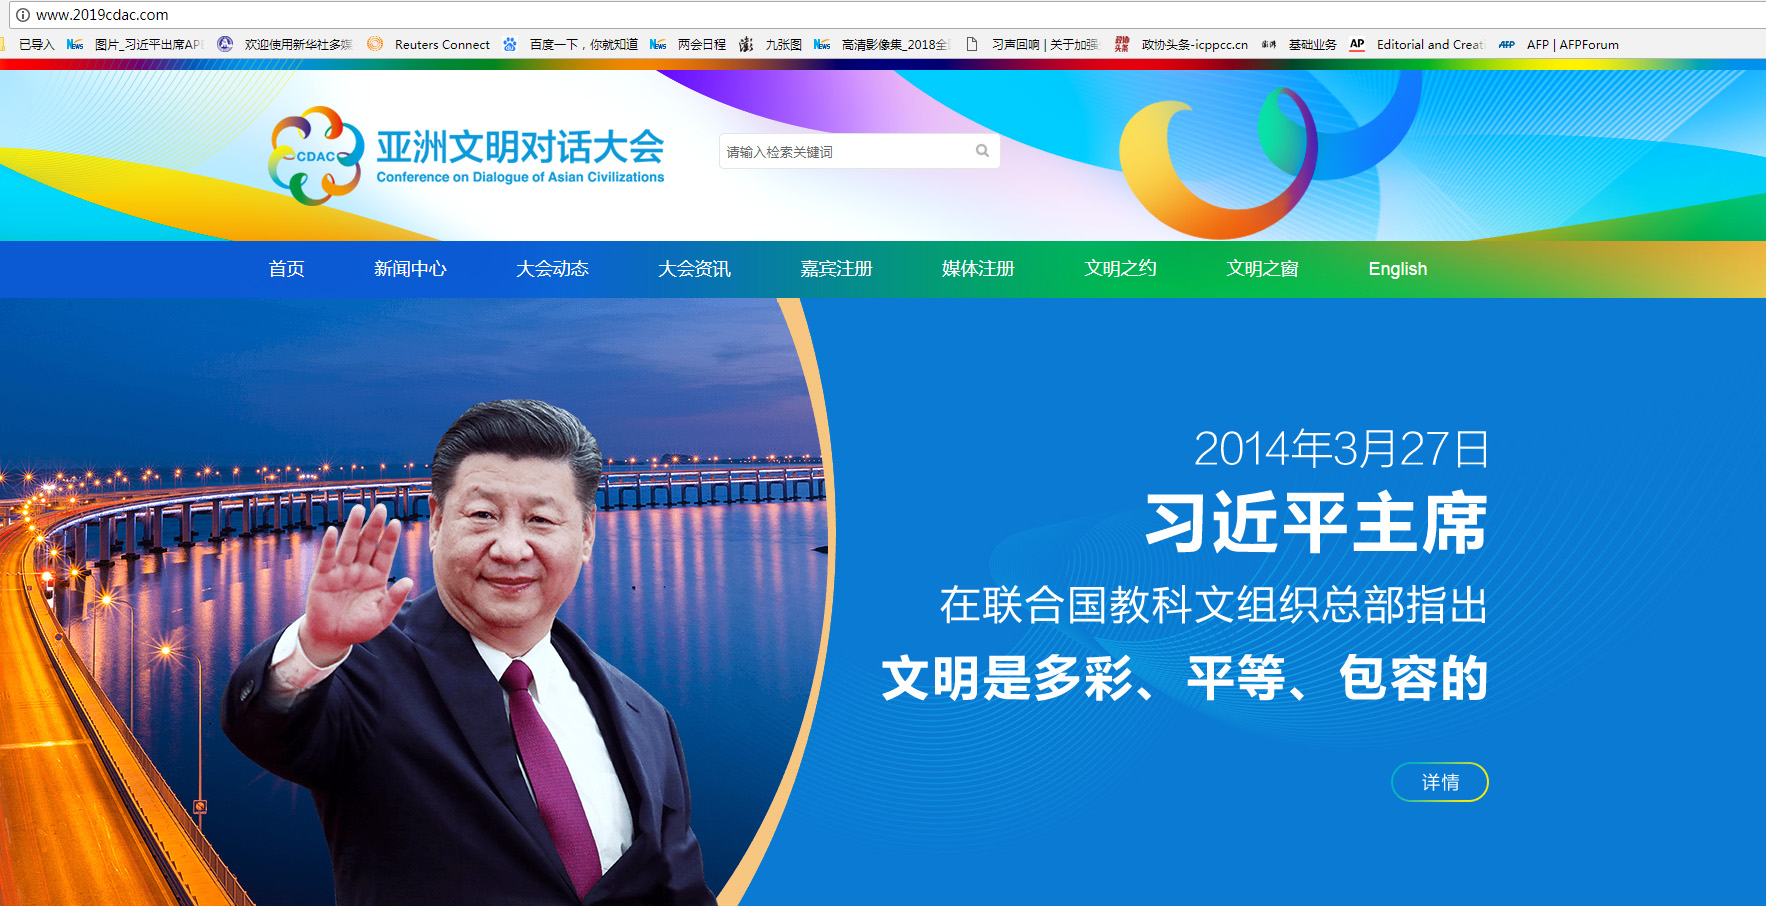 亚洲文明对话大会5月将在京举行：官网上线 Logo发布